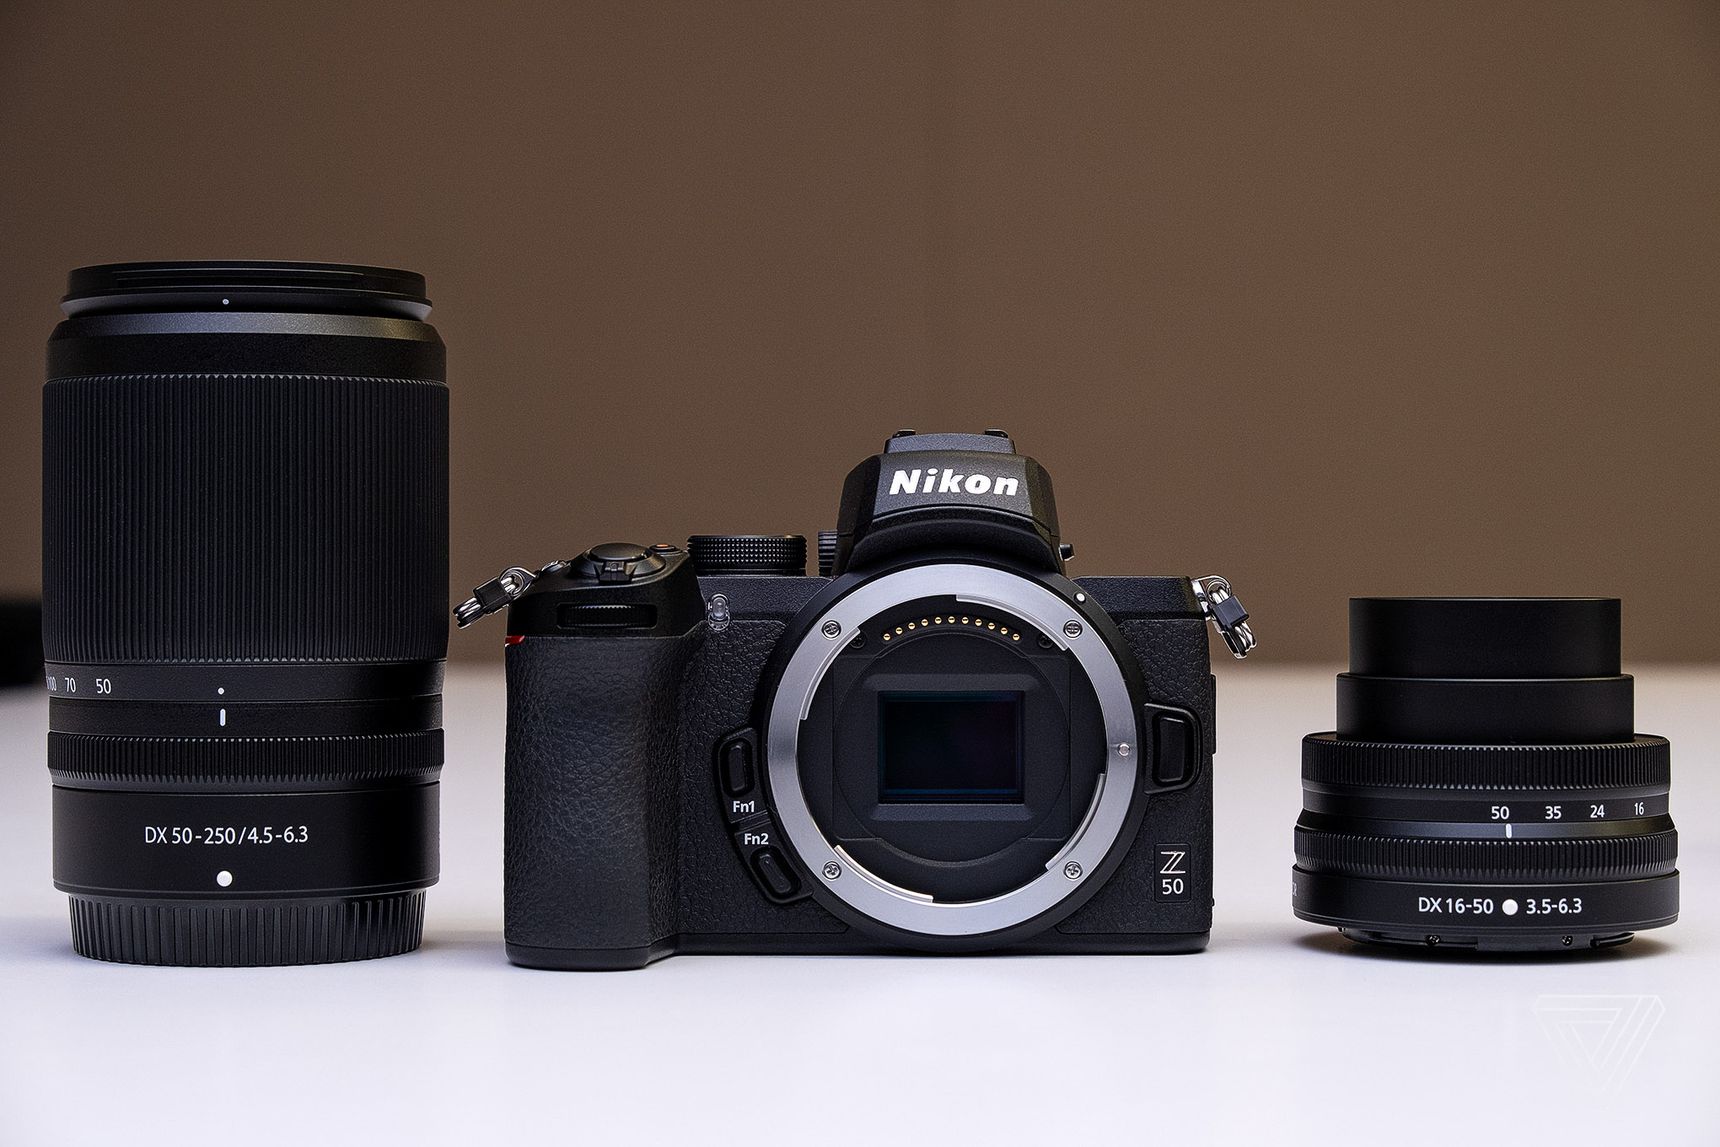 Nikon giới thiệu máy ảnh mirrorless Z50 gọn nhẹ và sử dụng cảm biến APS-C